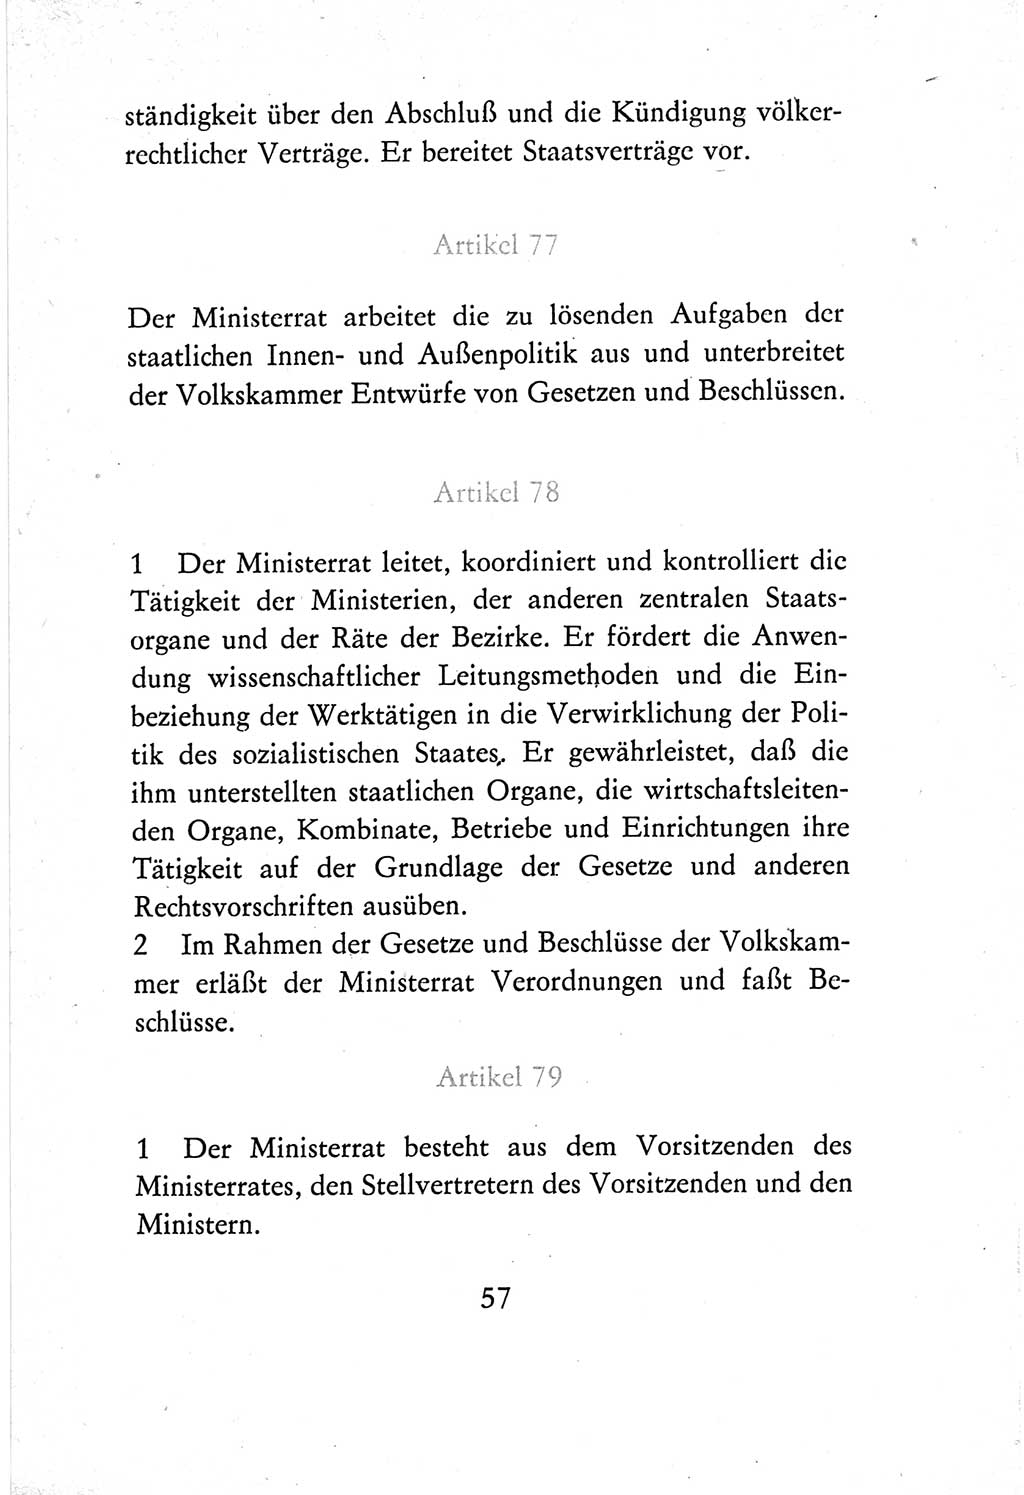 Verfassung der Deutschen Demokratischen Republik (DDR) vom 7. Oktober 1974, Seite 57 (Verf. DDR 1974, S. 57)